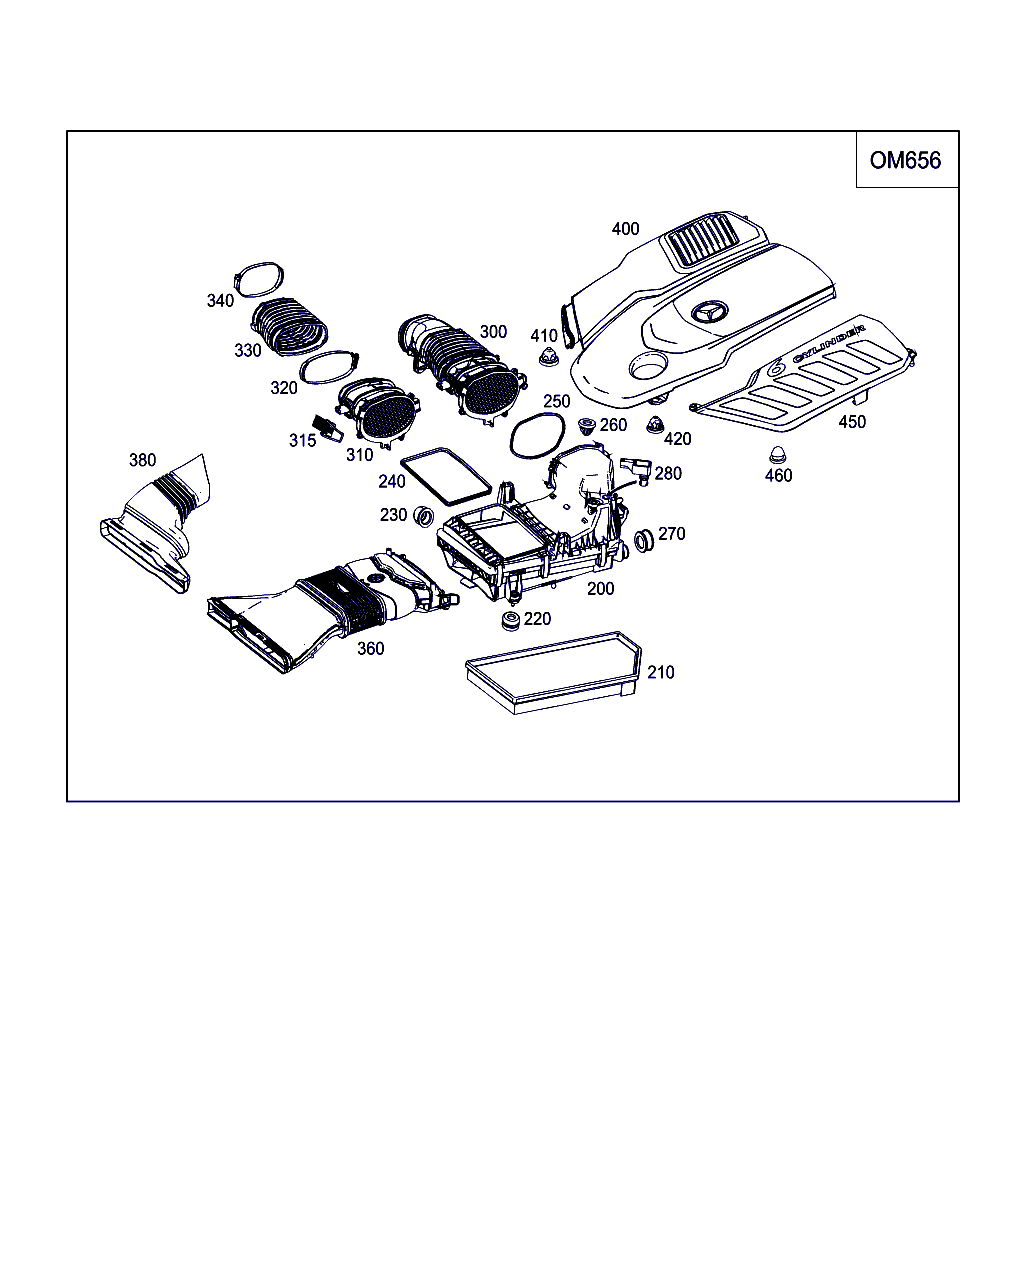 FRAM CA12466 - Воздушный фильтр autodnr.net